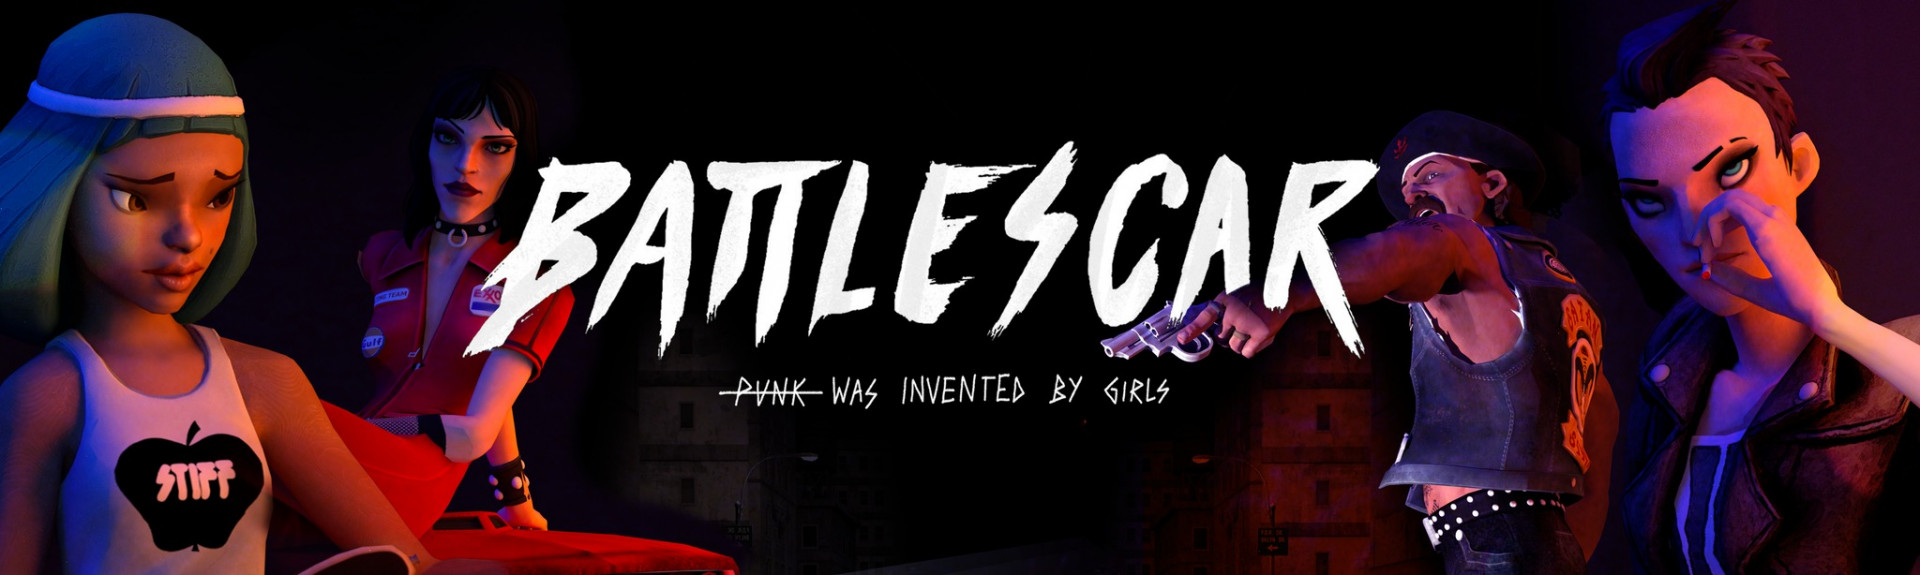 BATTLESCAR: Punk Was Invented By Girls